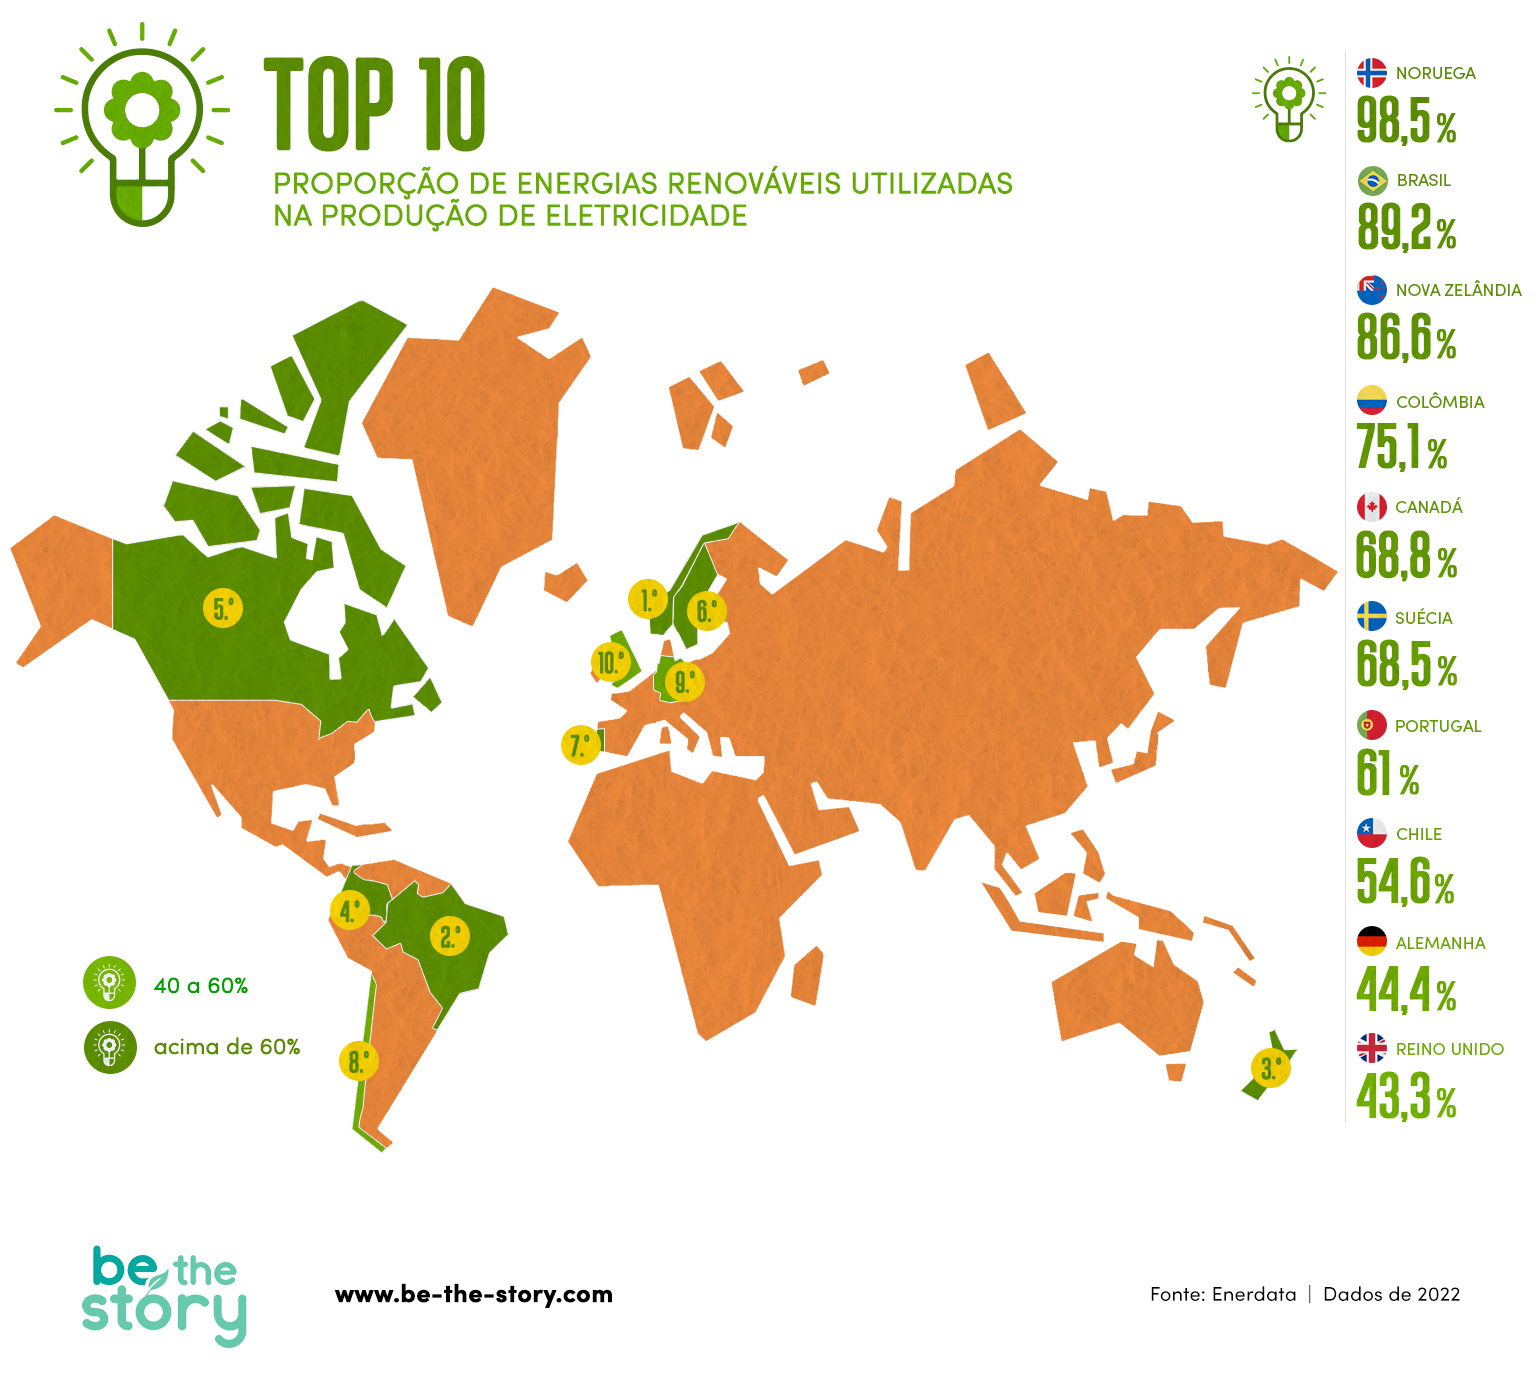 Top 10 países com maior proporção de energias renováveis utilizadas na produção de eletricidade.